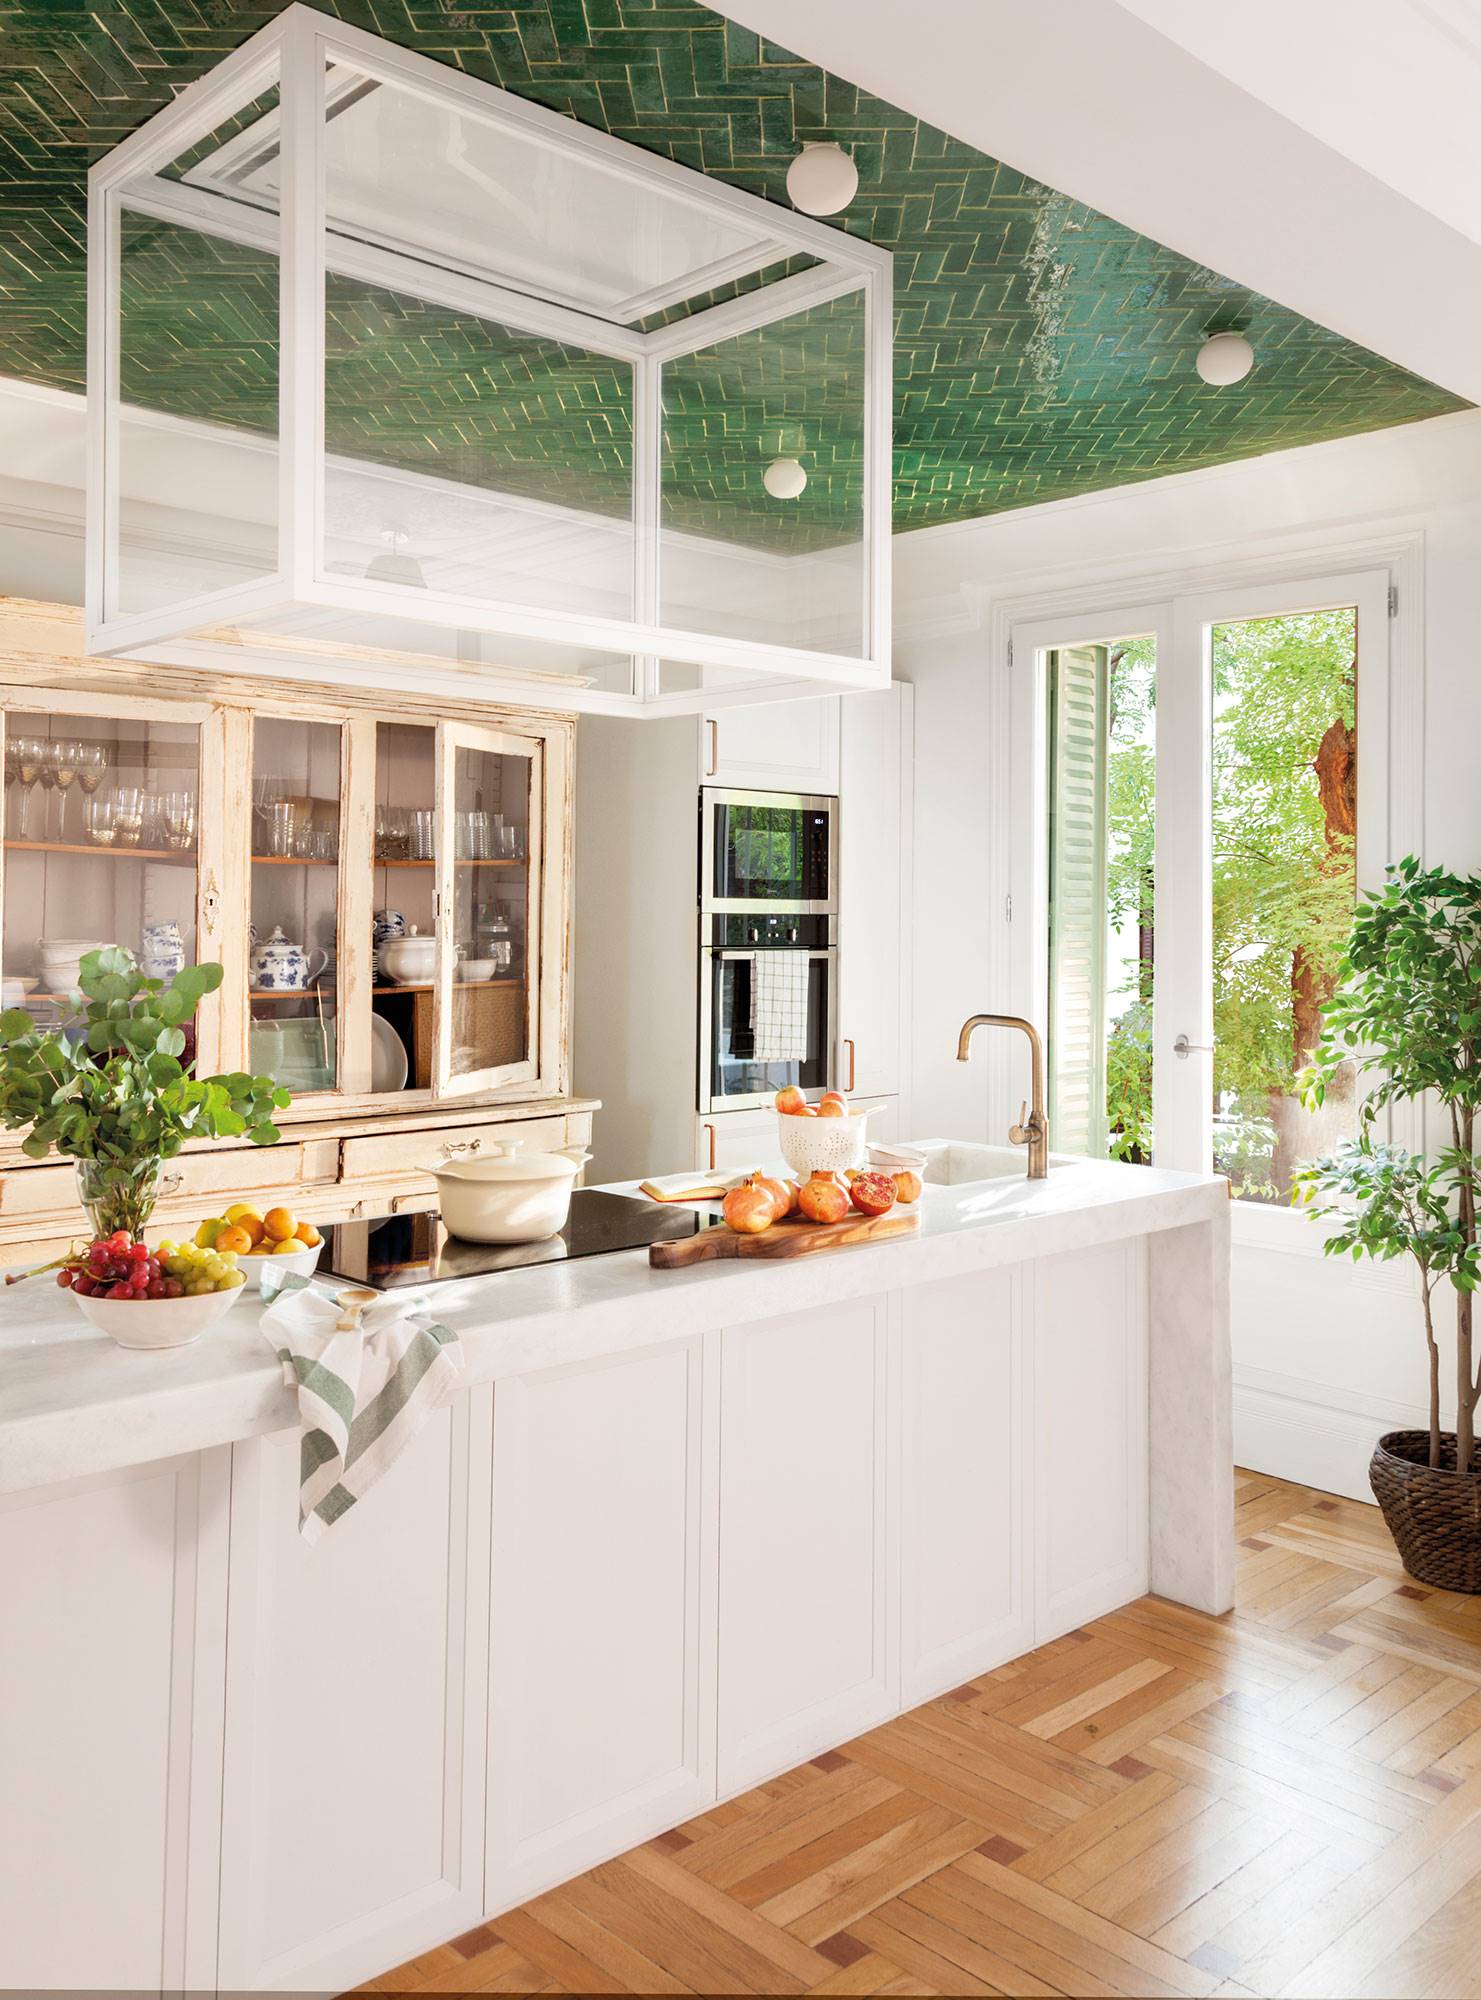 Cocina de diseño con barra blanca, campana extractora moderna de cristal, azulejos verdes en el techo y alacena antigua recuperada.